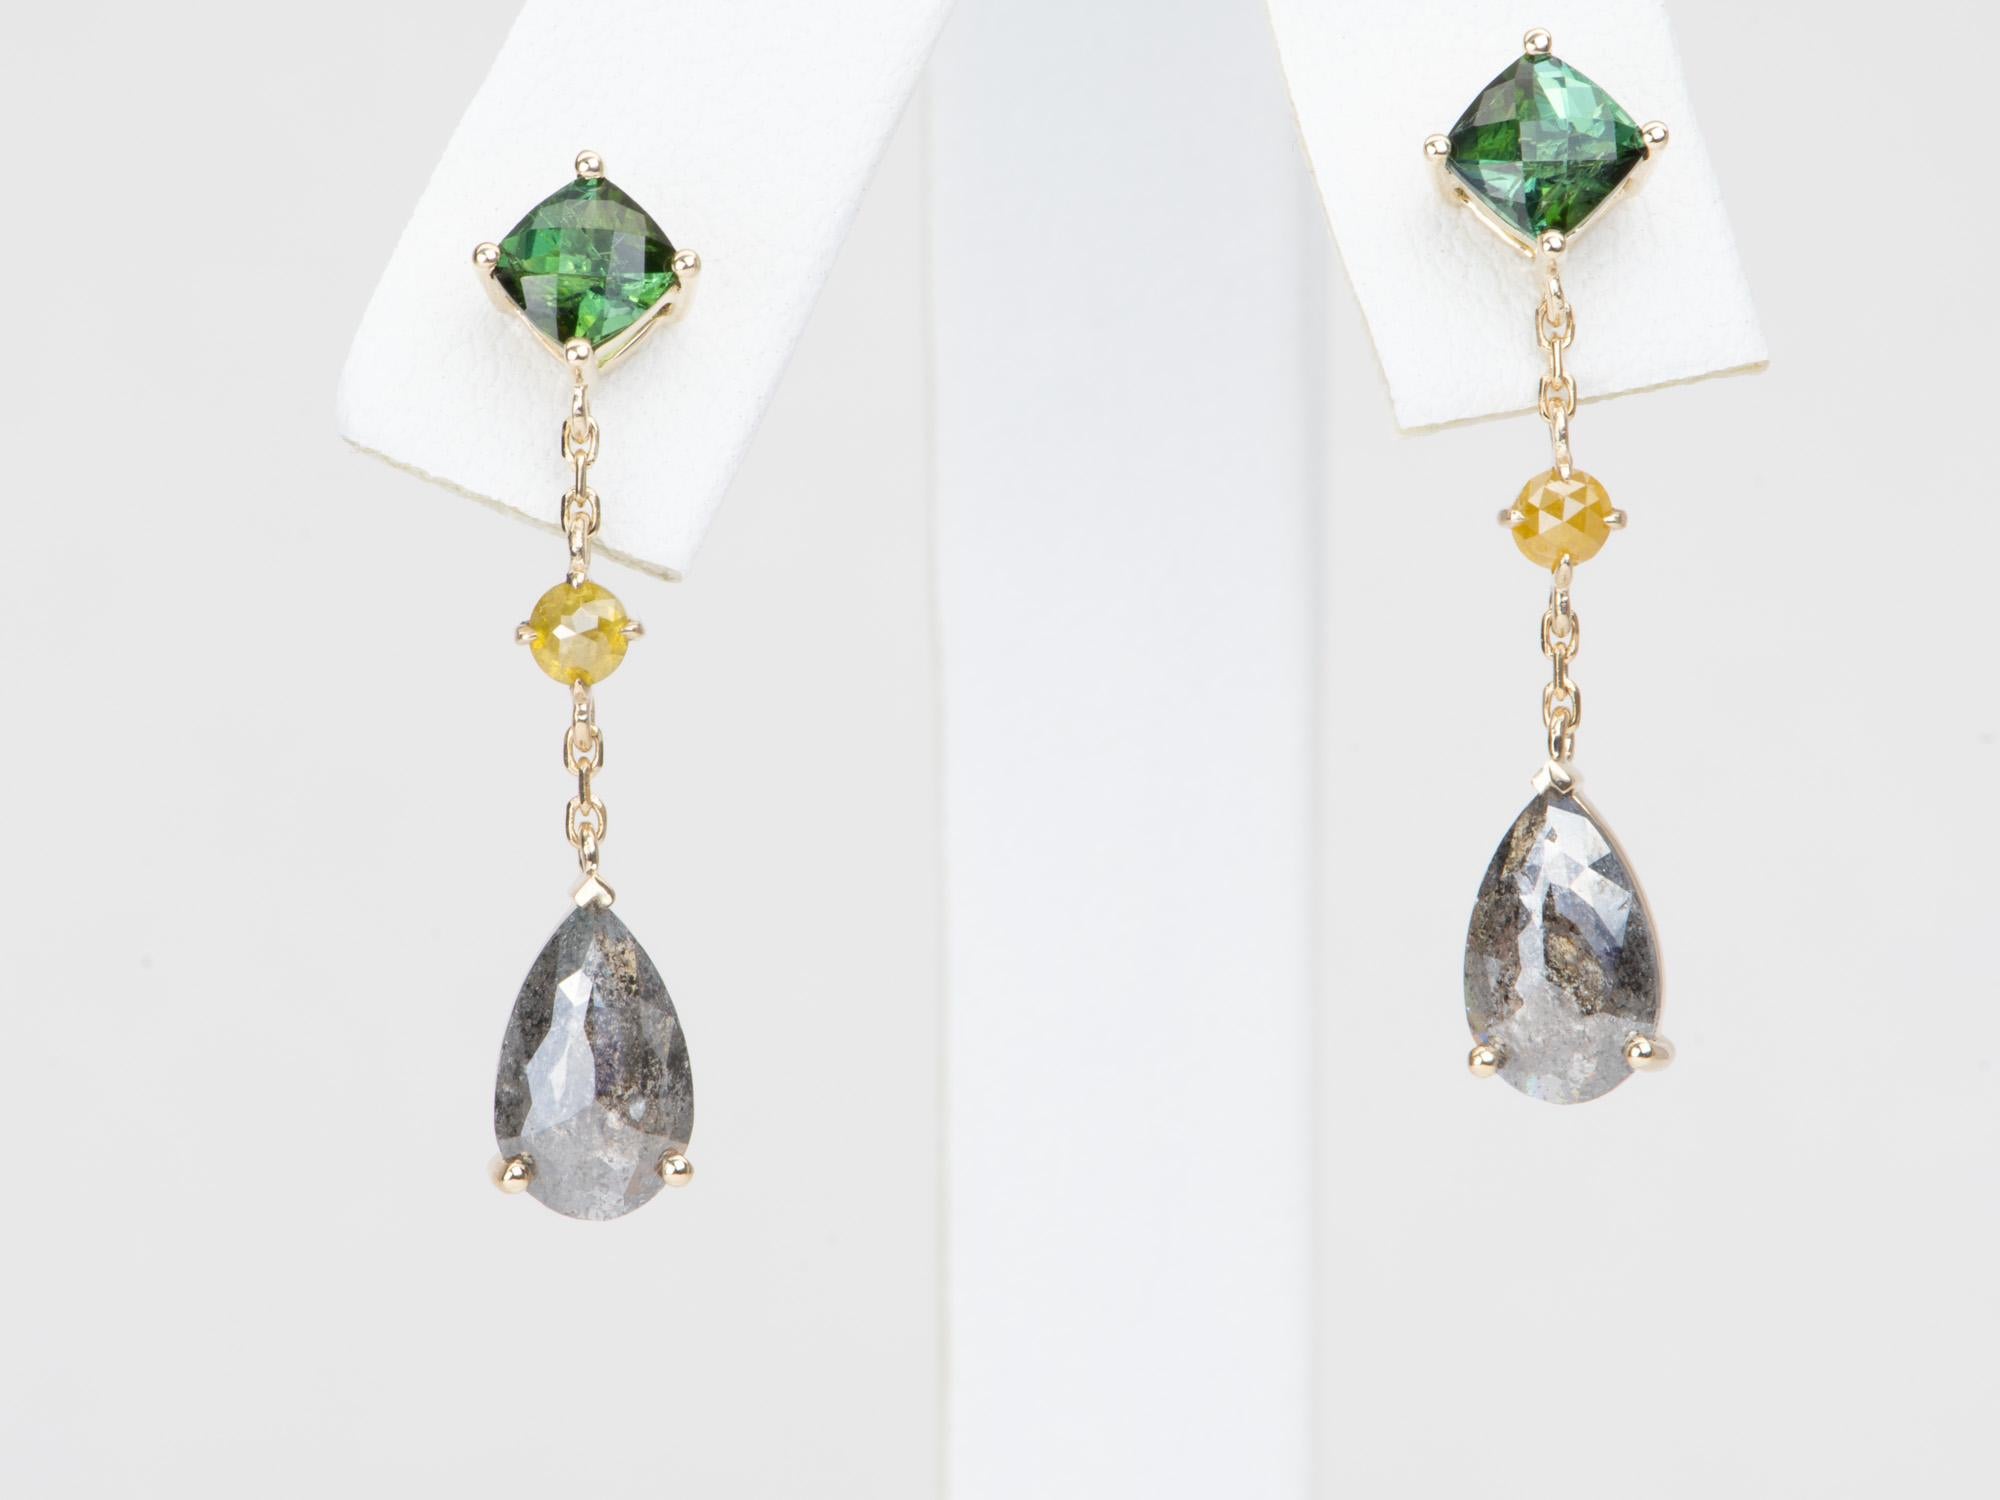 Veredeln Sie Ihren Look mit diesen exquisiten Diamant- und Turmalin-Ohrringen. Das aus 14-karätigem Gold gefertigte Paar verleiht mit seinen Diamanten im Rosenschliff und Chromturmalinen einen Hauch von Luxus. Zeigen Sie Ihren einzigartigen Stil und